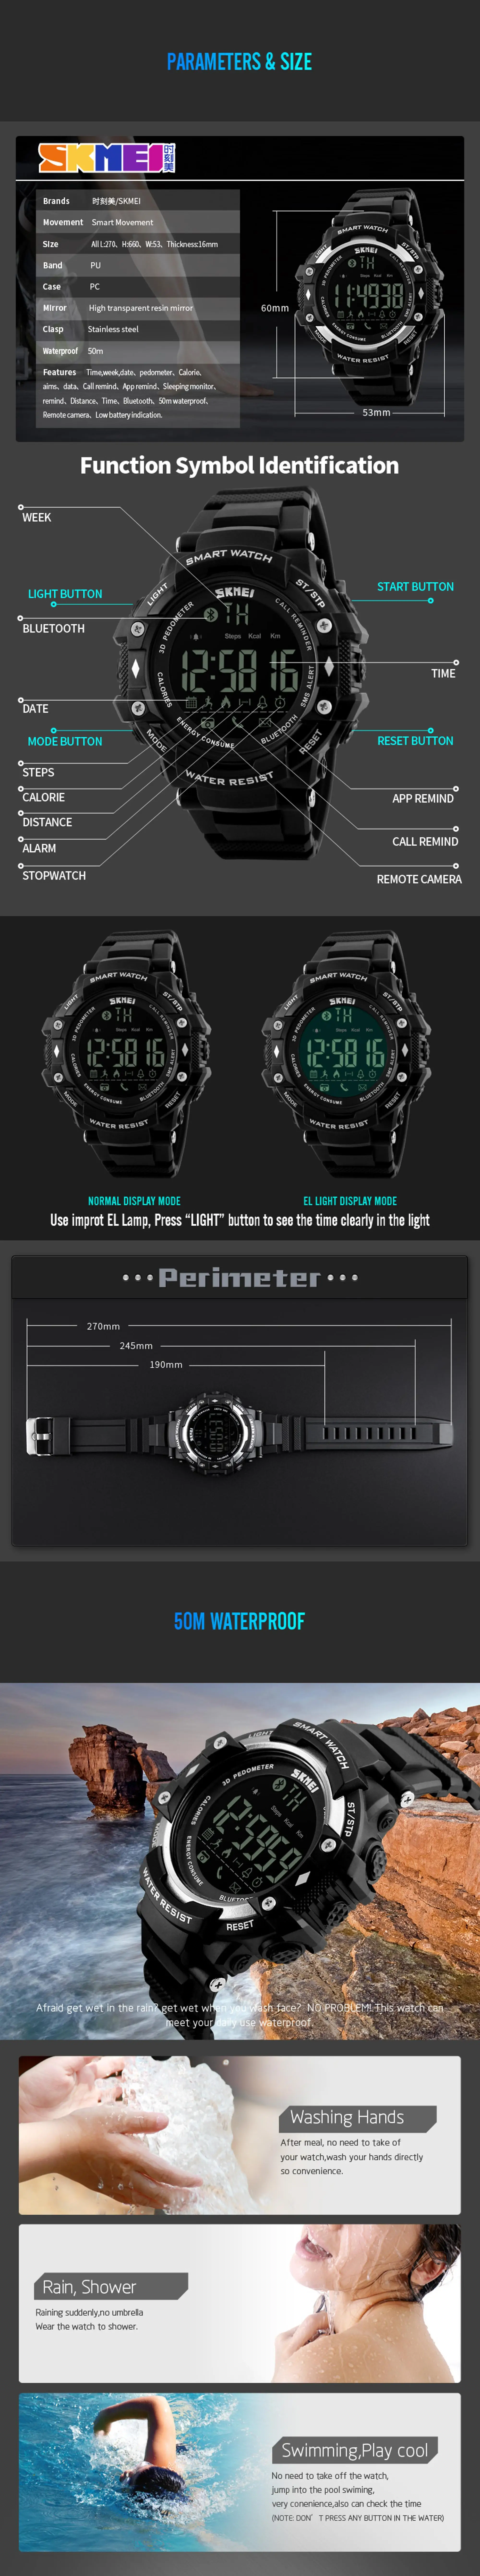 sport smart watch 3.jpg